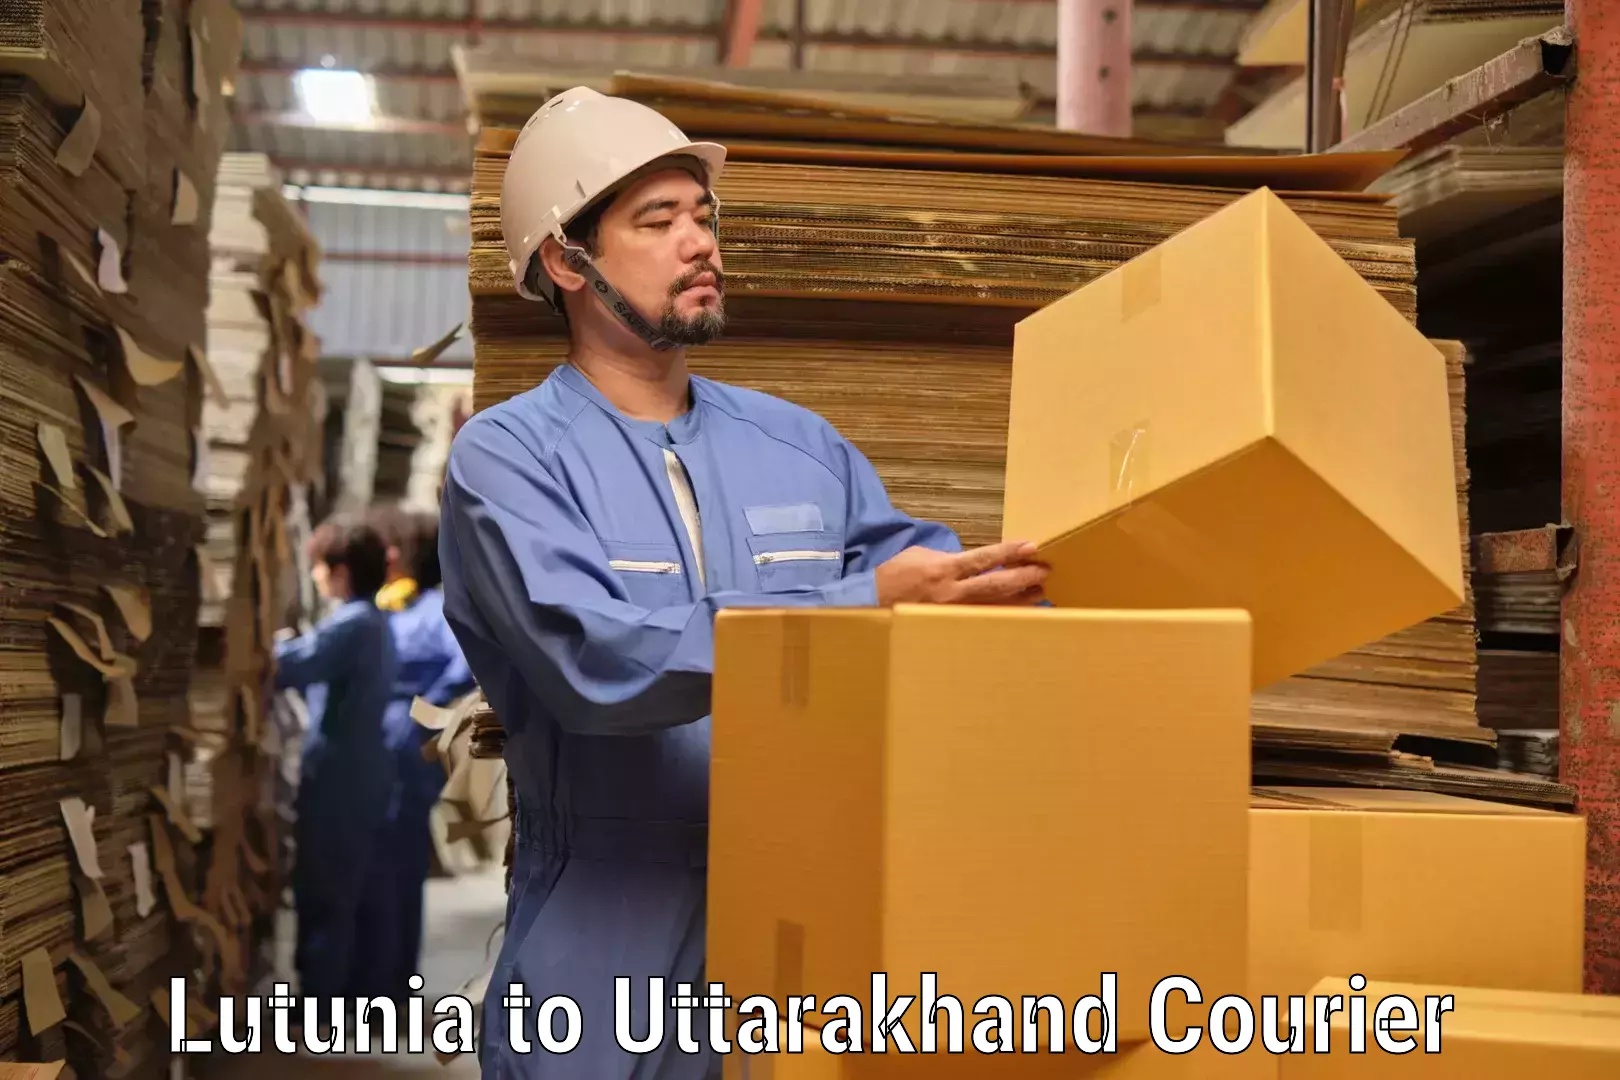 Courier service comparison Lutunia to Uttarkashi